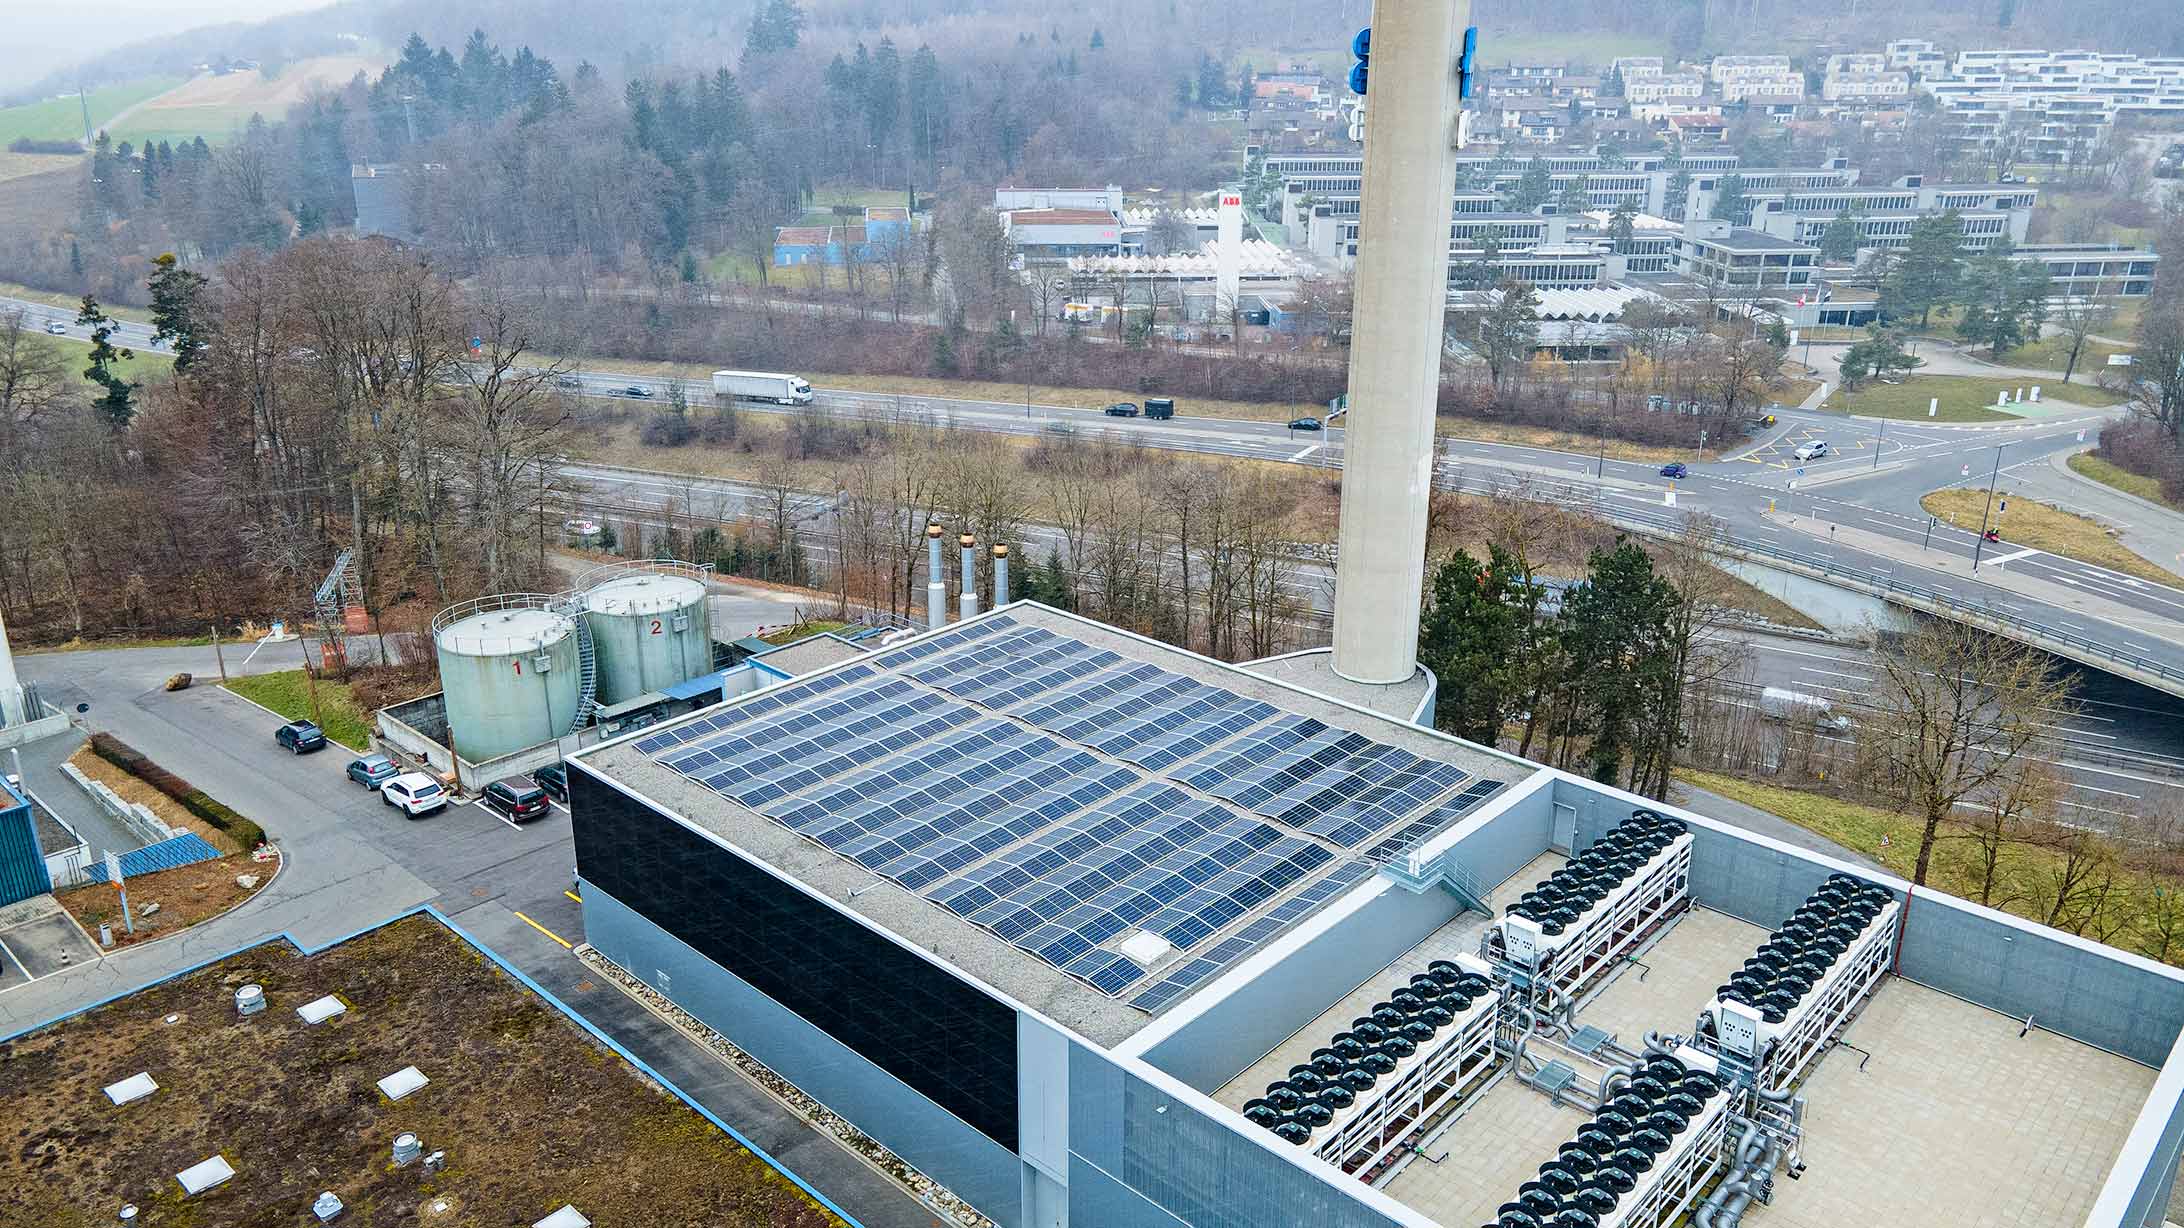 Drohnenbild der Energiezentrale Gesundheits-Campus KSB mit Kamin und Photovoltaikanlage auf dem Dach, Autobahn A1 im Hintergrund.